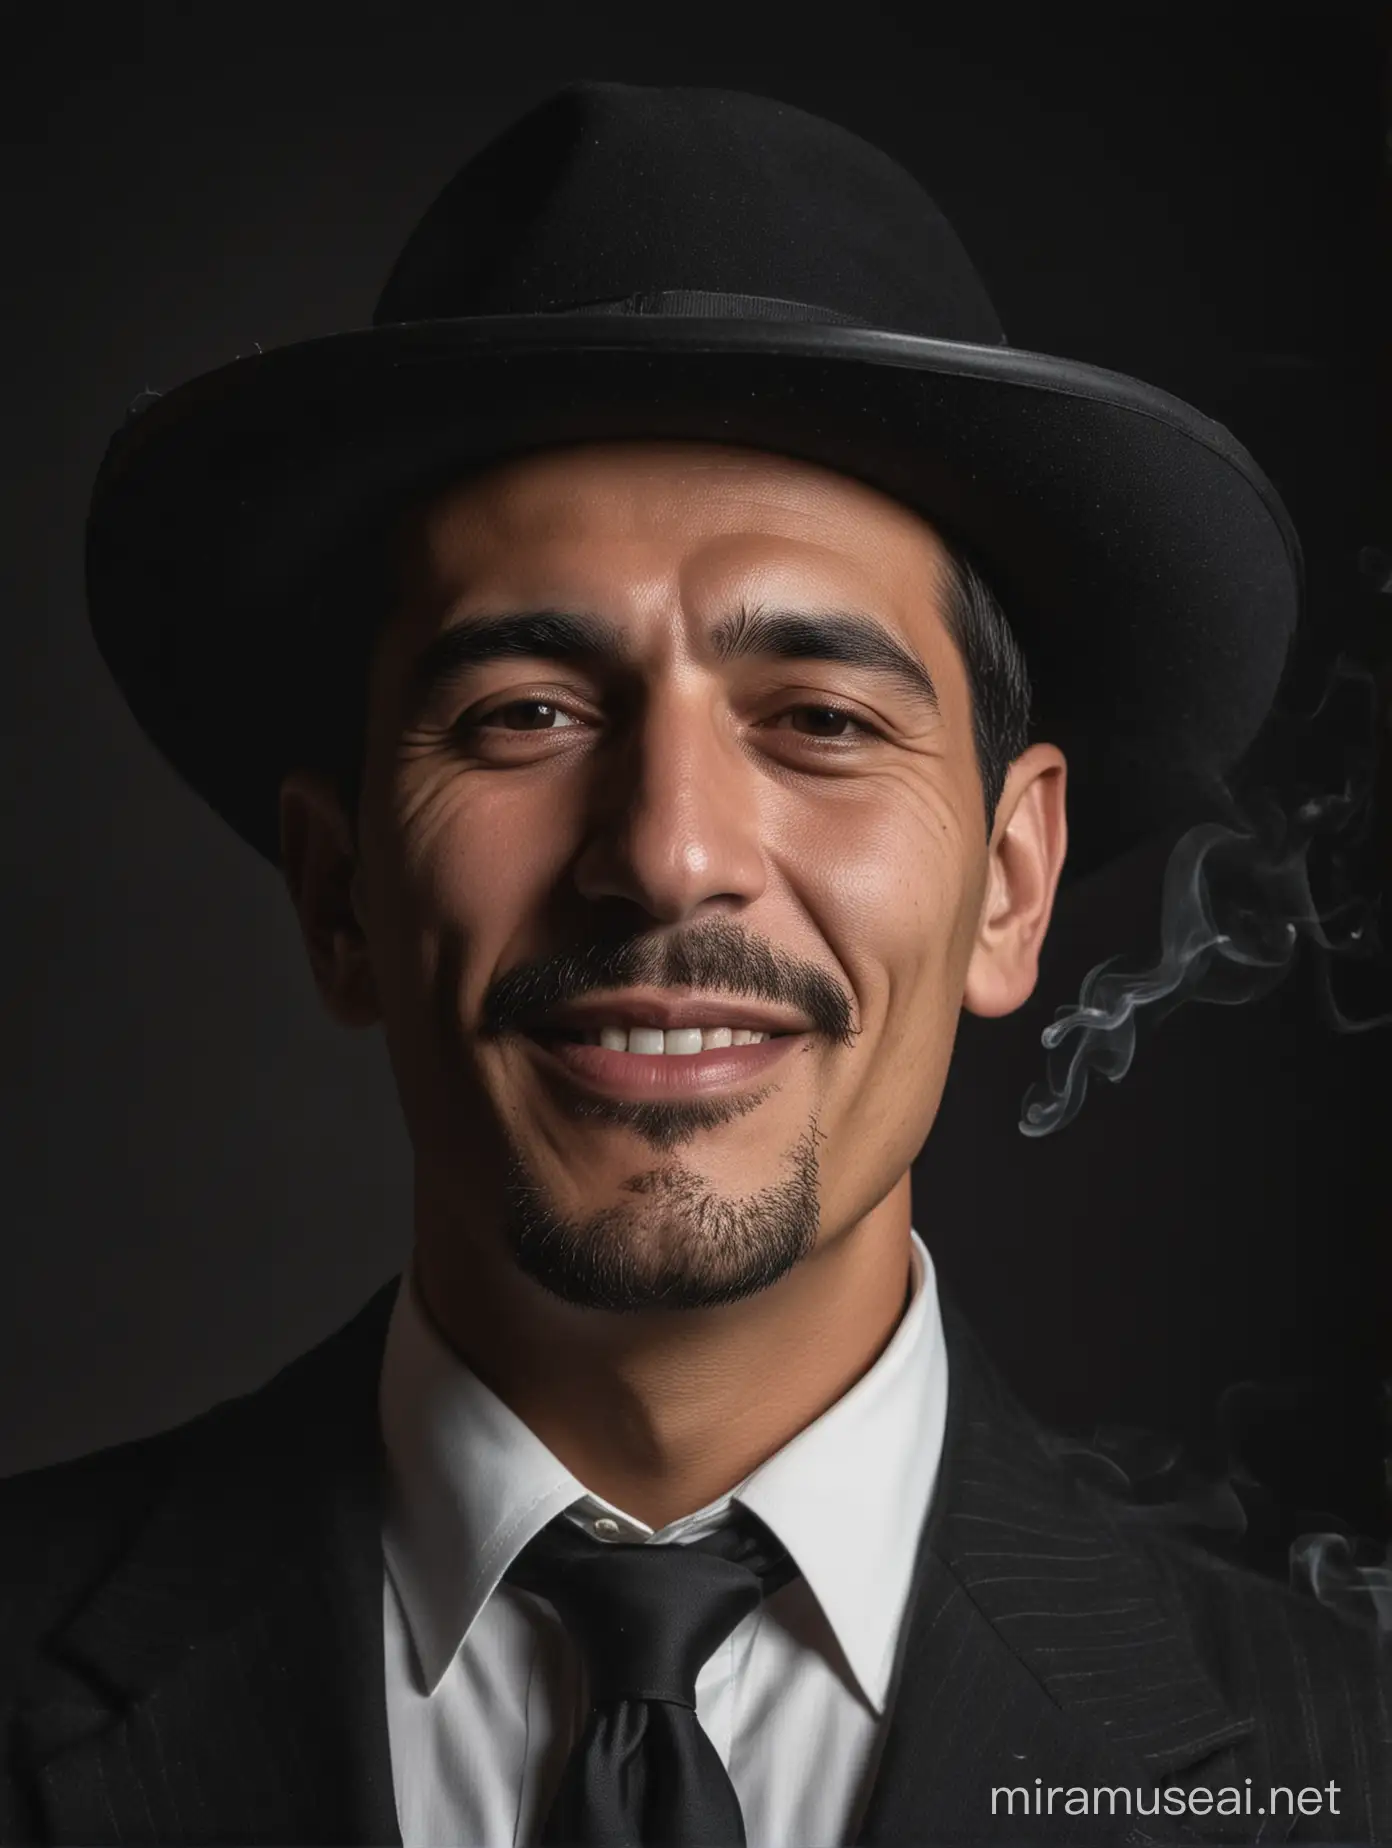 Портрет Мужчины который является главой мафии, черный фон, сигарета во рту смотрит в бок< Улыбается Мексиканская внешность